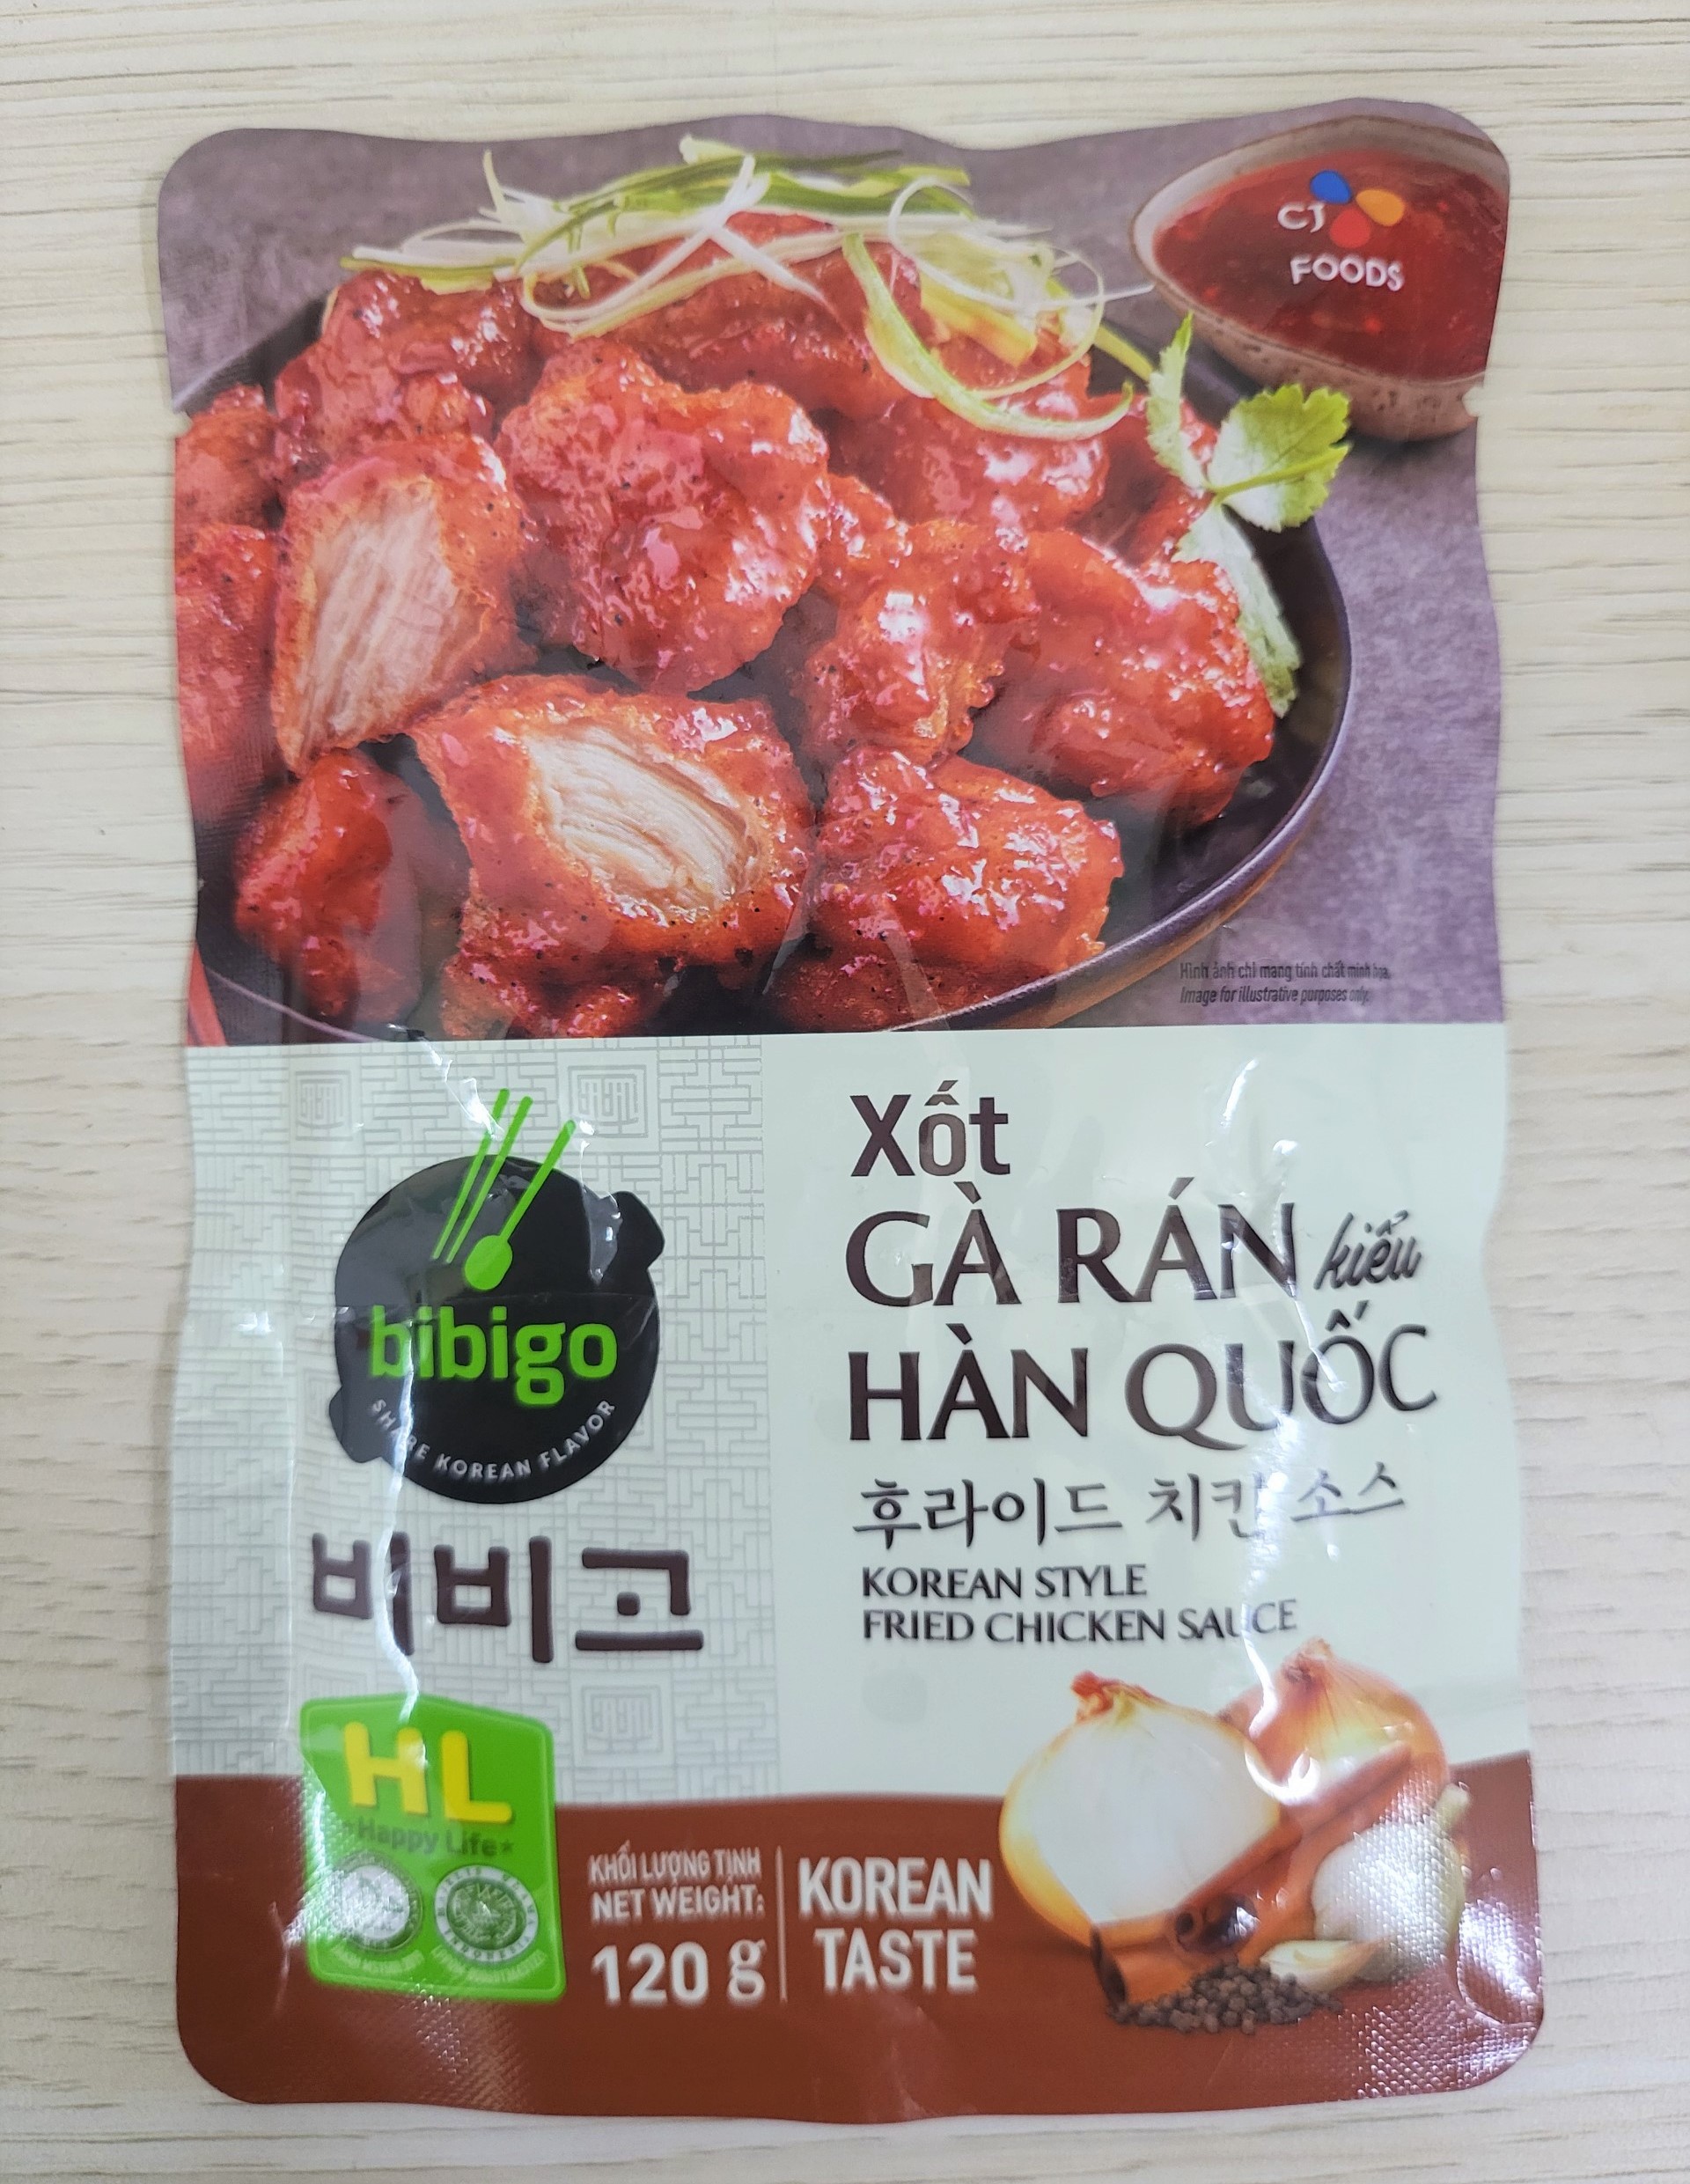 gói 120g XỐT GÀ RÁN KIỂU HÀN QUỐC BIBIGO Korean Style Fried Chicken Sauce